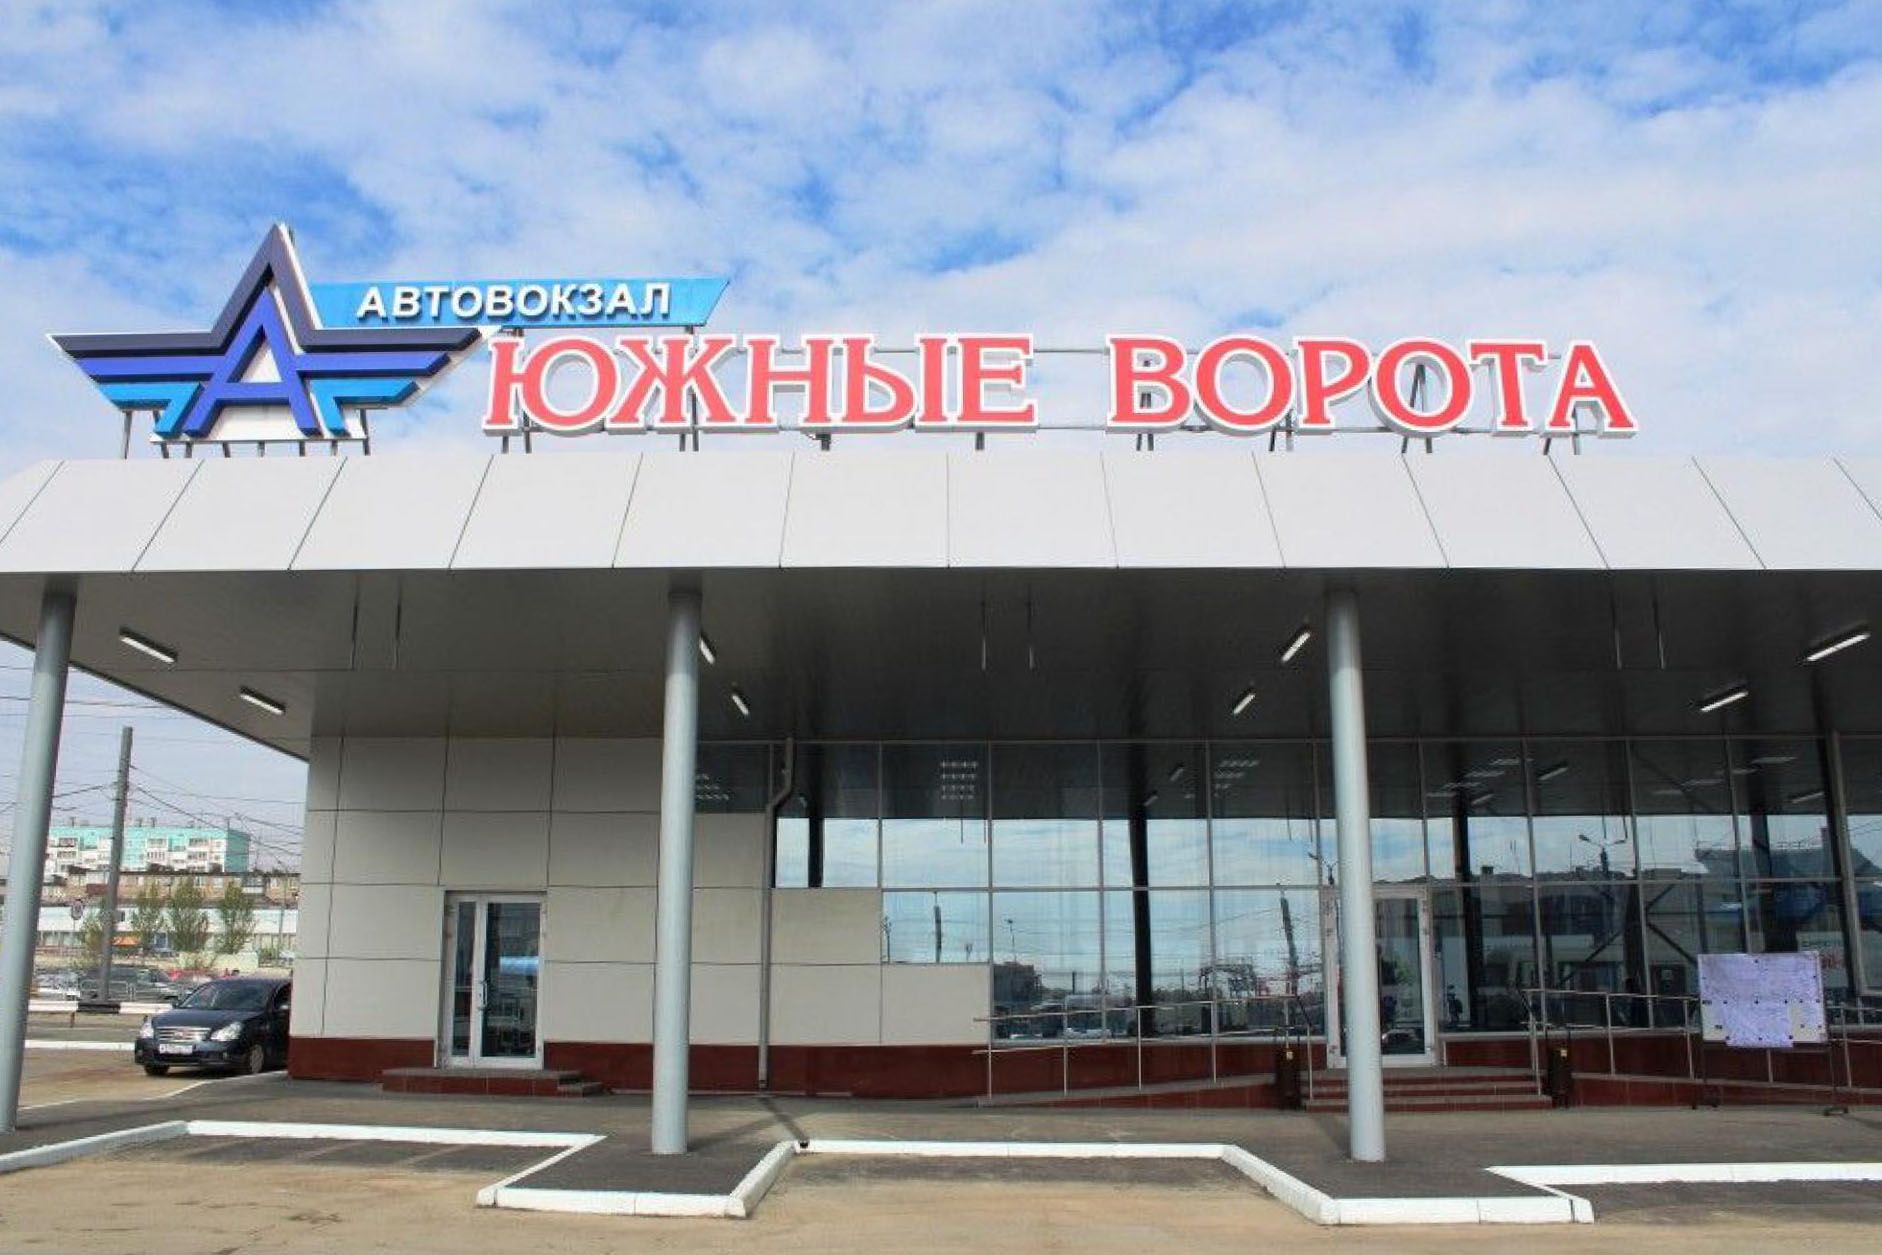 Автовокзал Южные ворота Синегорье Челябинск